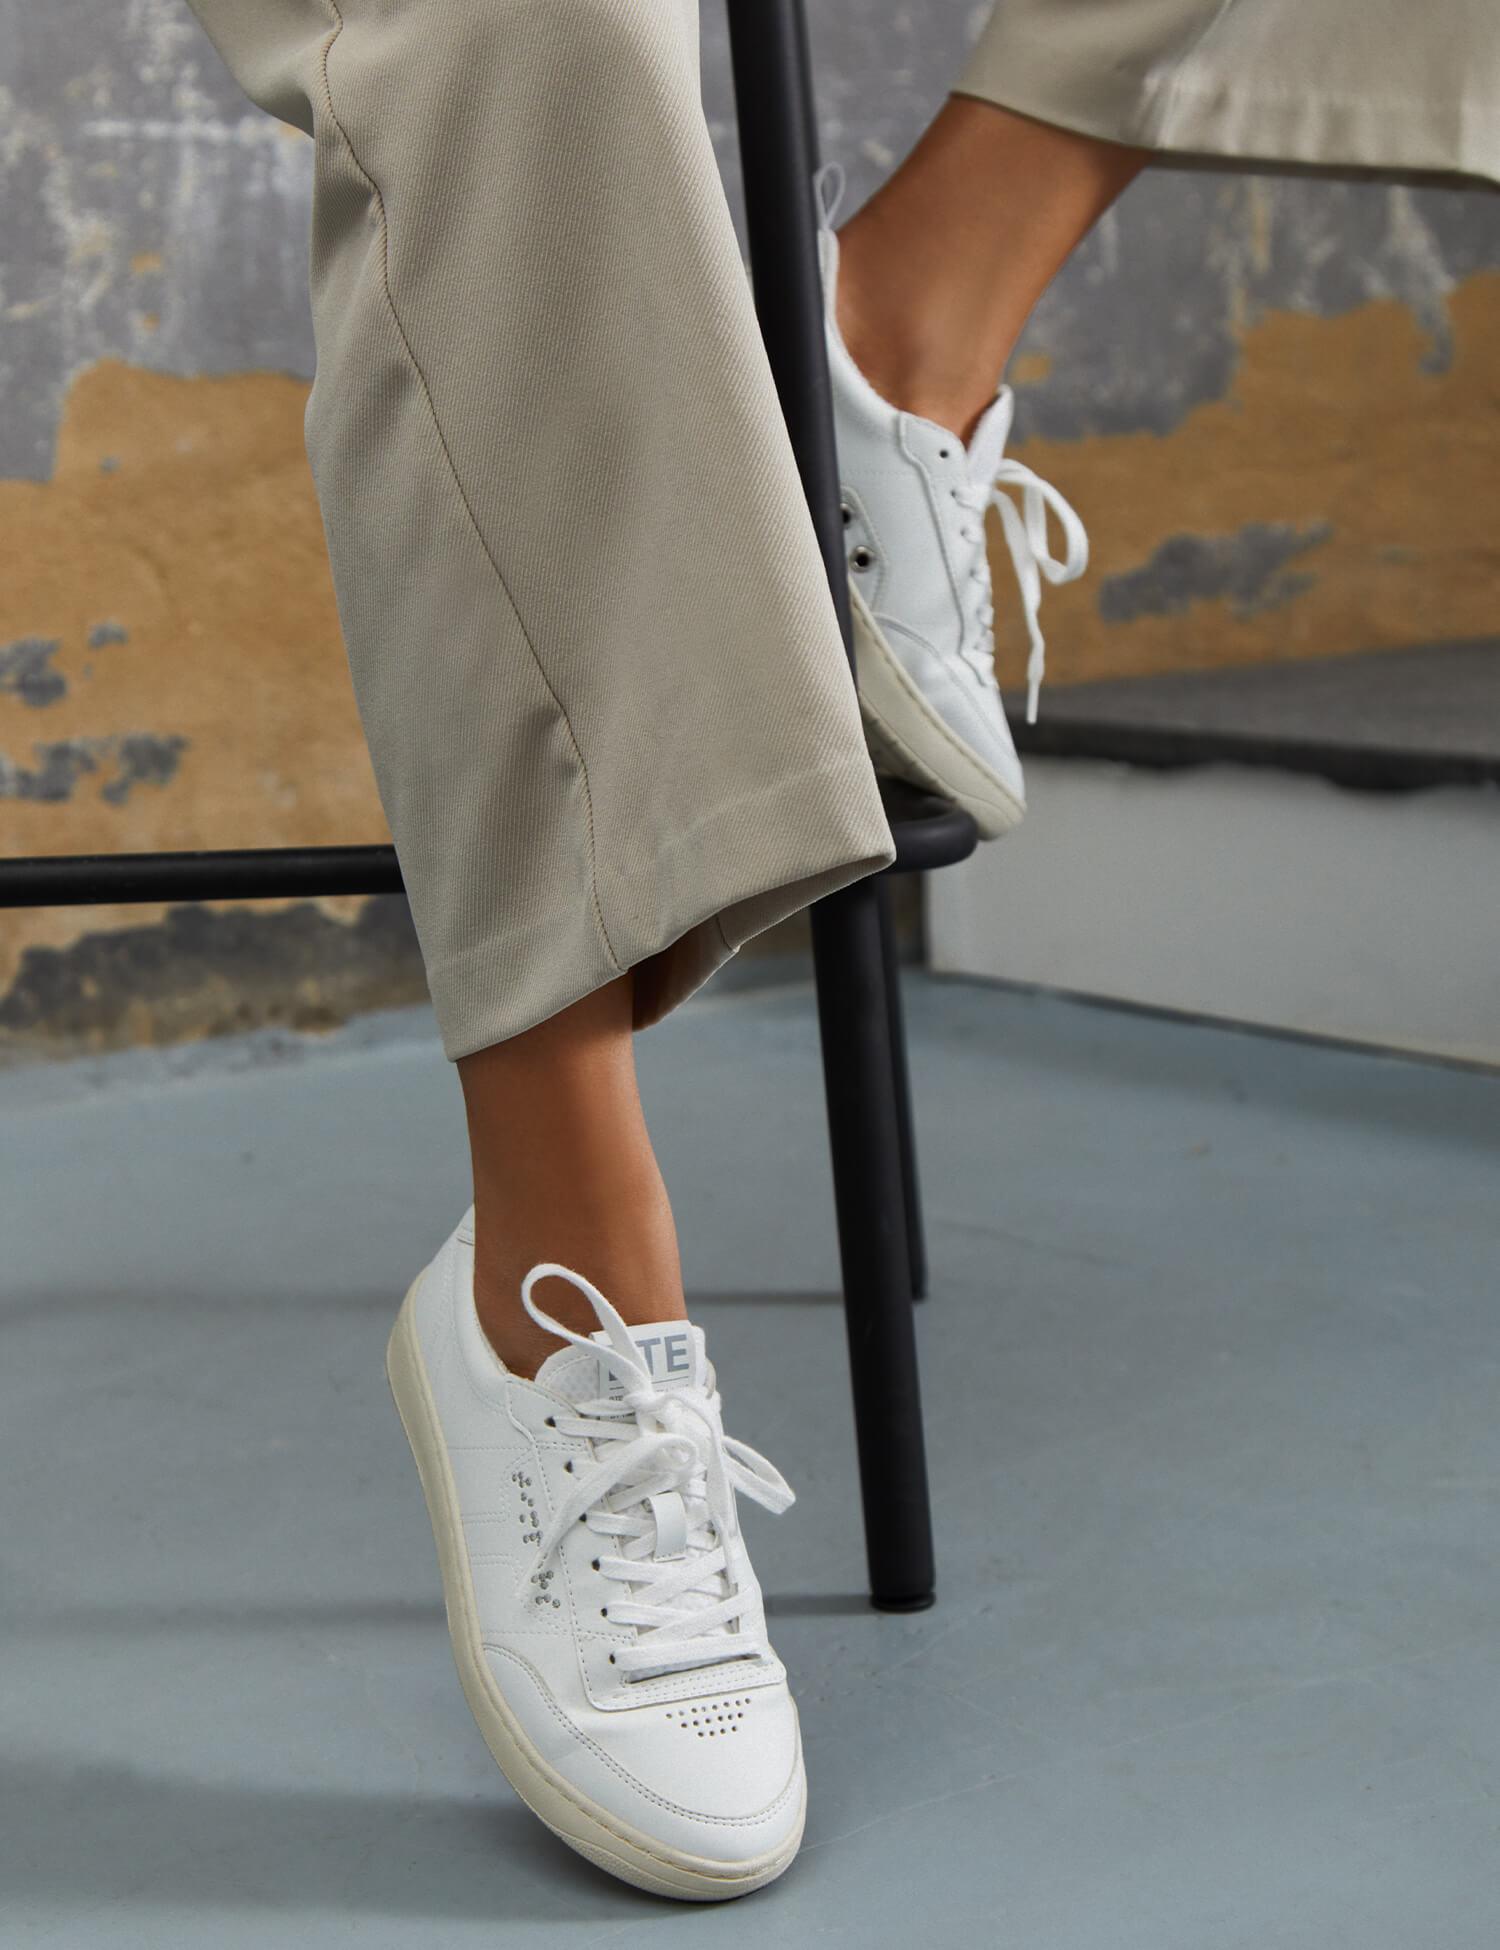 Zapatilla blanca con suela un tono color crema con puntera y trasera blanca. Son zapatillas unisex.